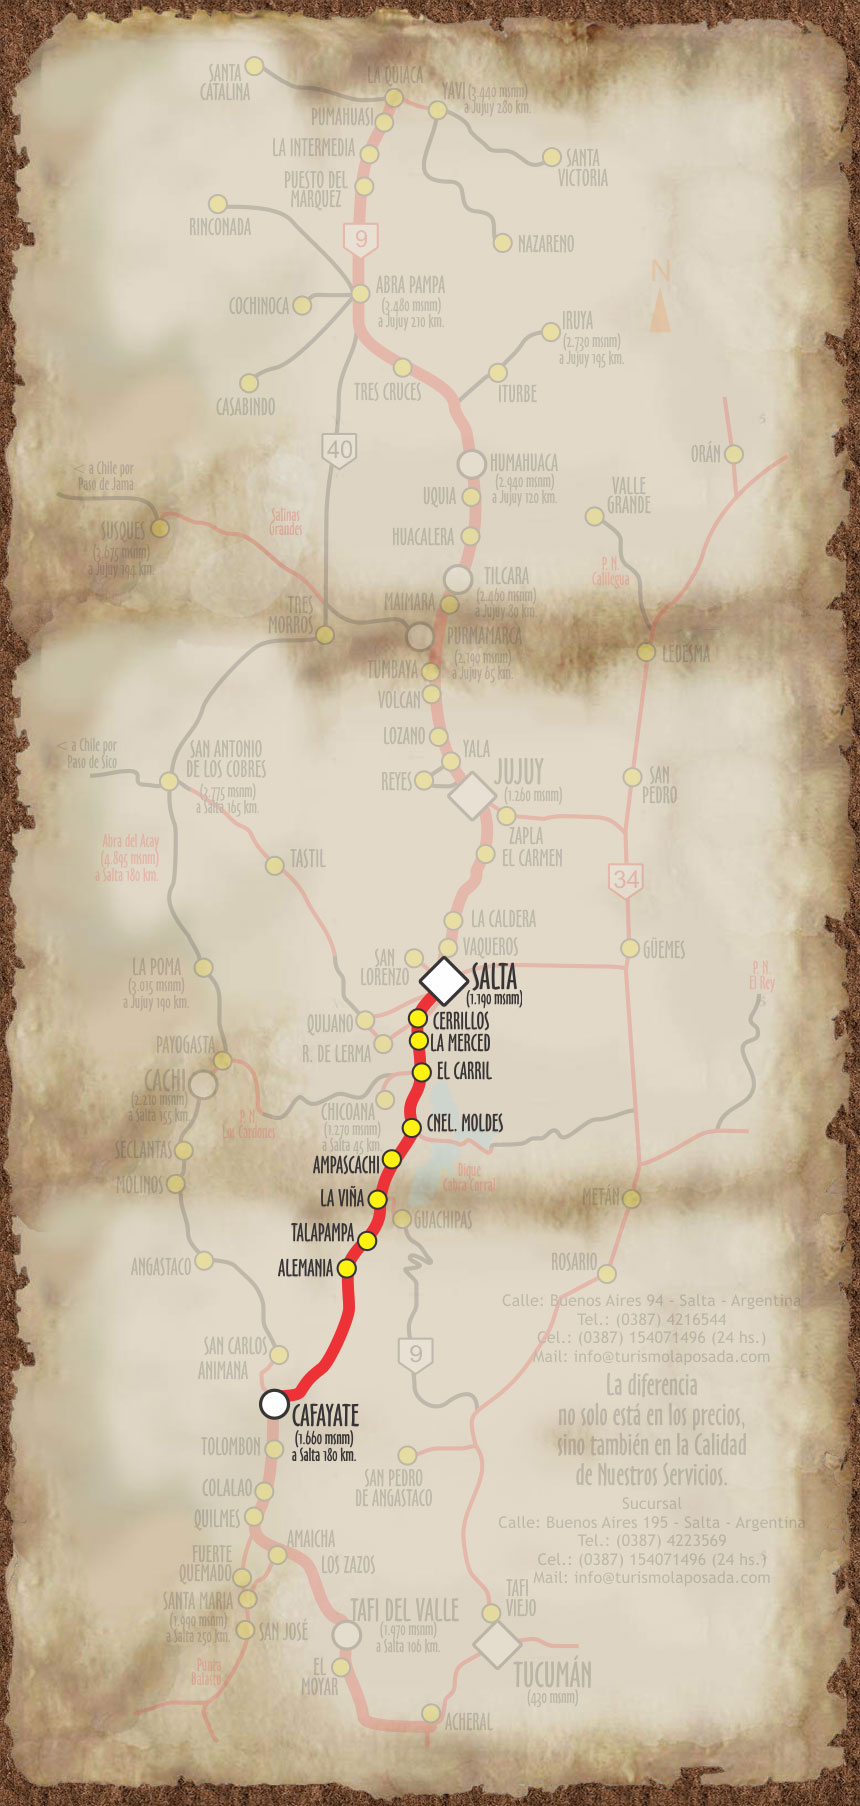 Imagen, con el mapa personalizado, del recorrido a la localidad de Cafayate, provincia de Salta.